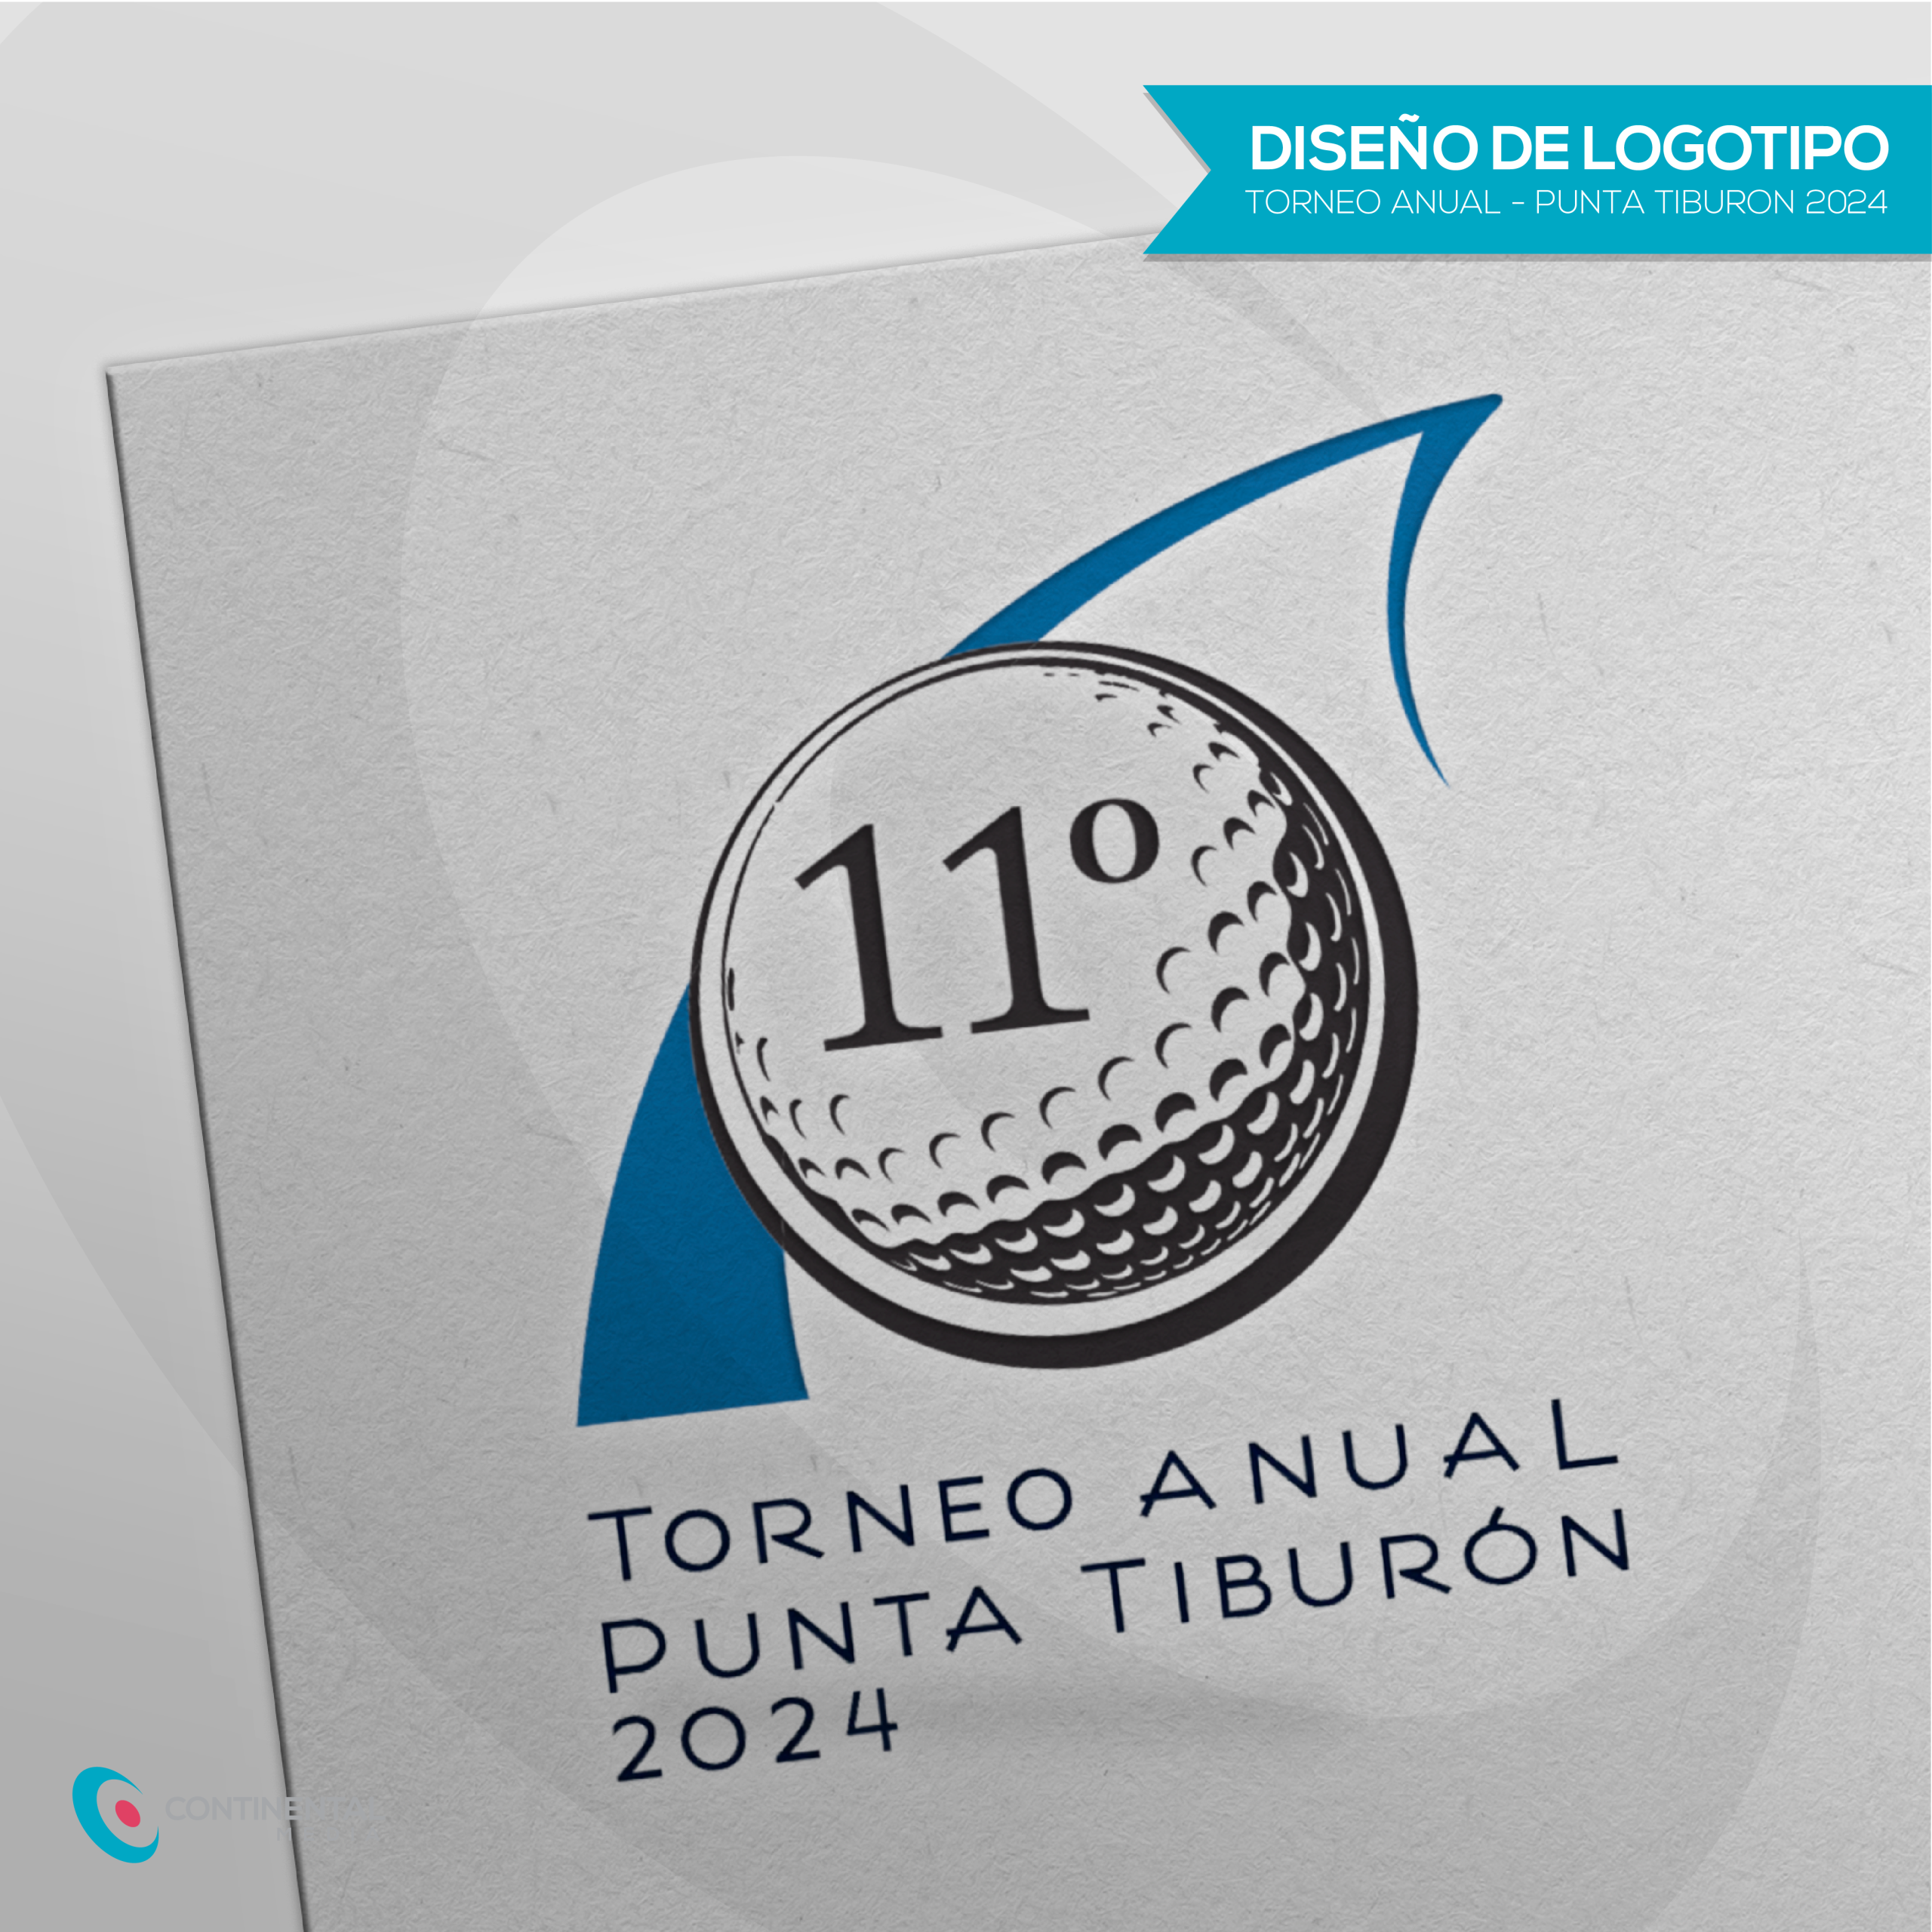 Logotipo del Torneo Anual Punta Tiburón 2024